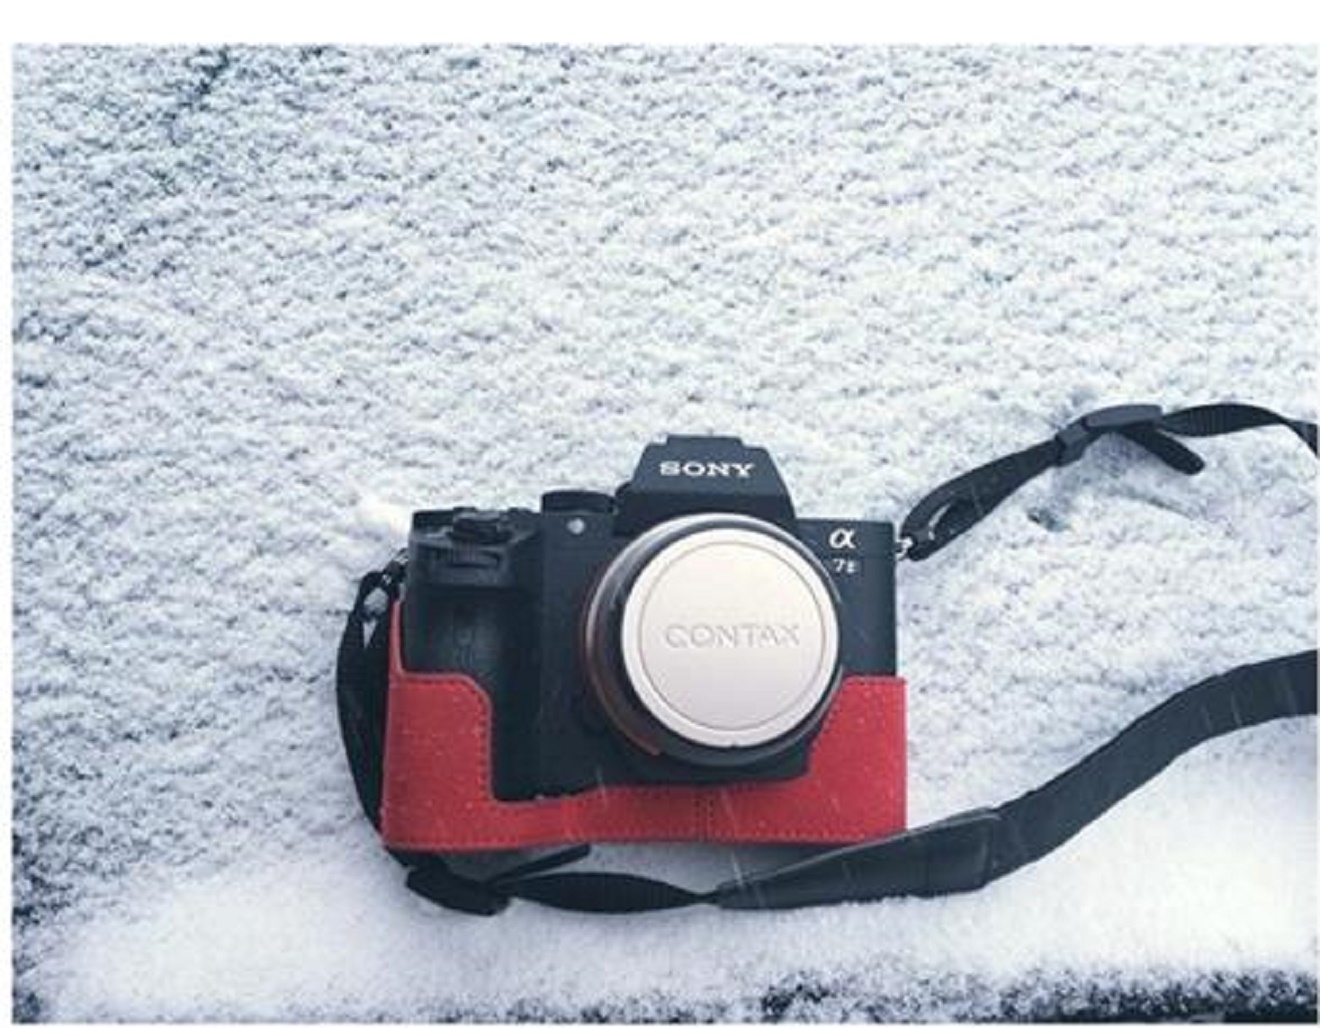 Bảo vệ máy ảnh khỏi băng tuyết